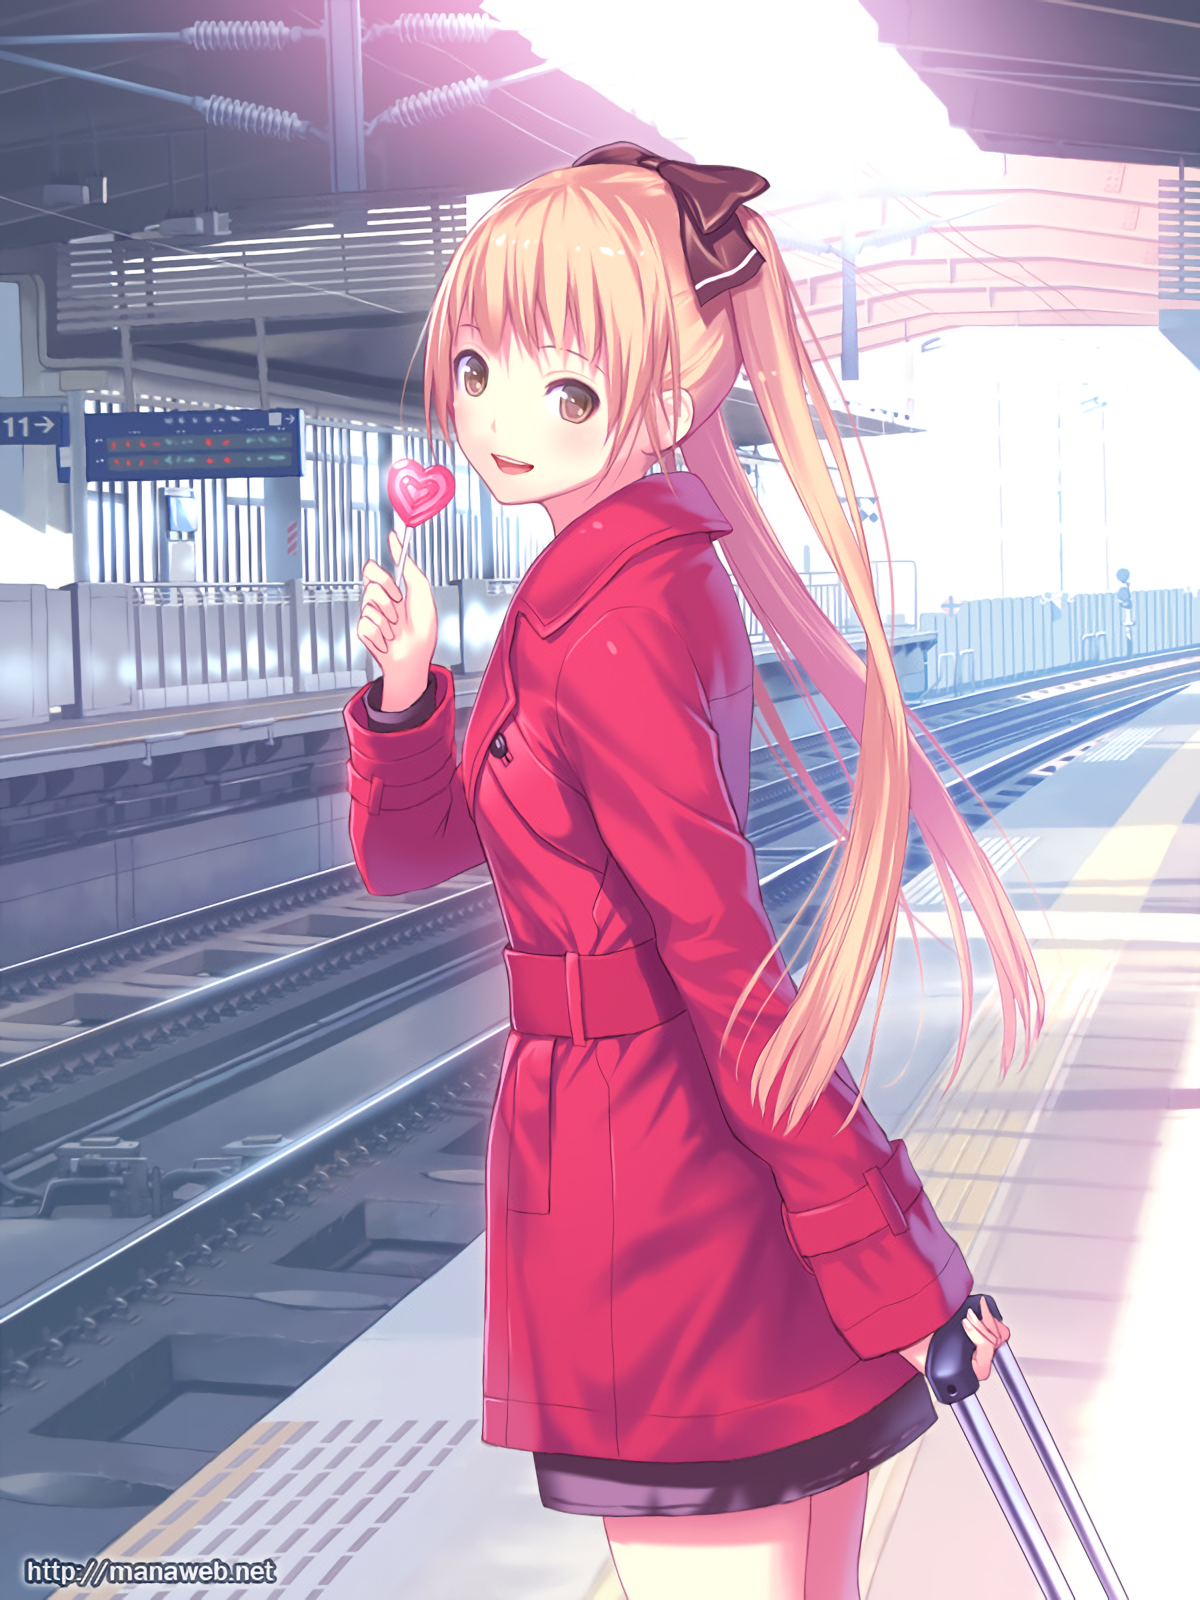 Anime 1200x1600 anime anime girls train station long hair blonde brown eyes Mana Wara